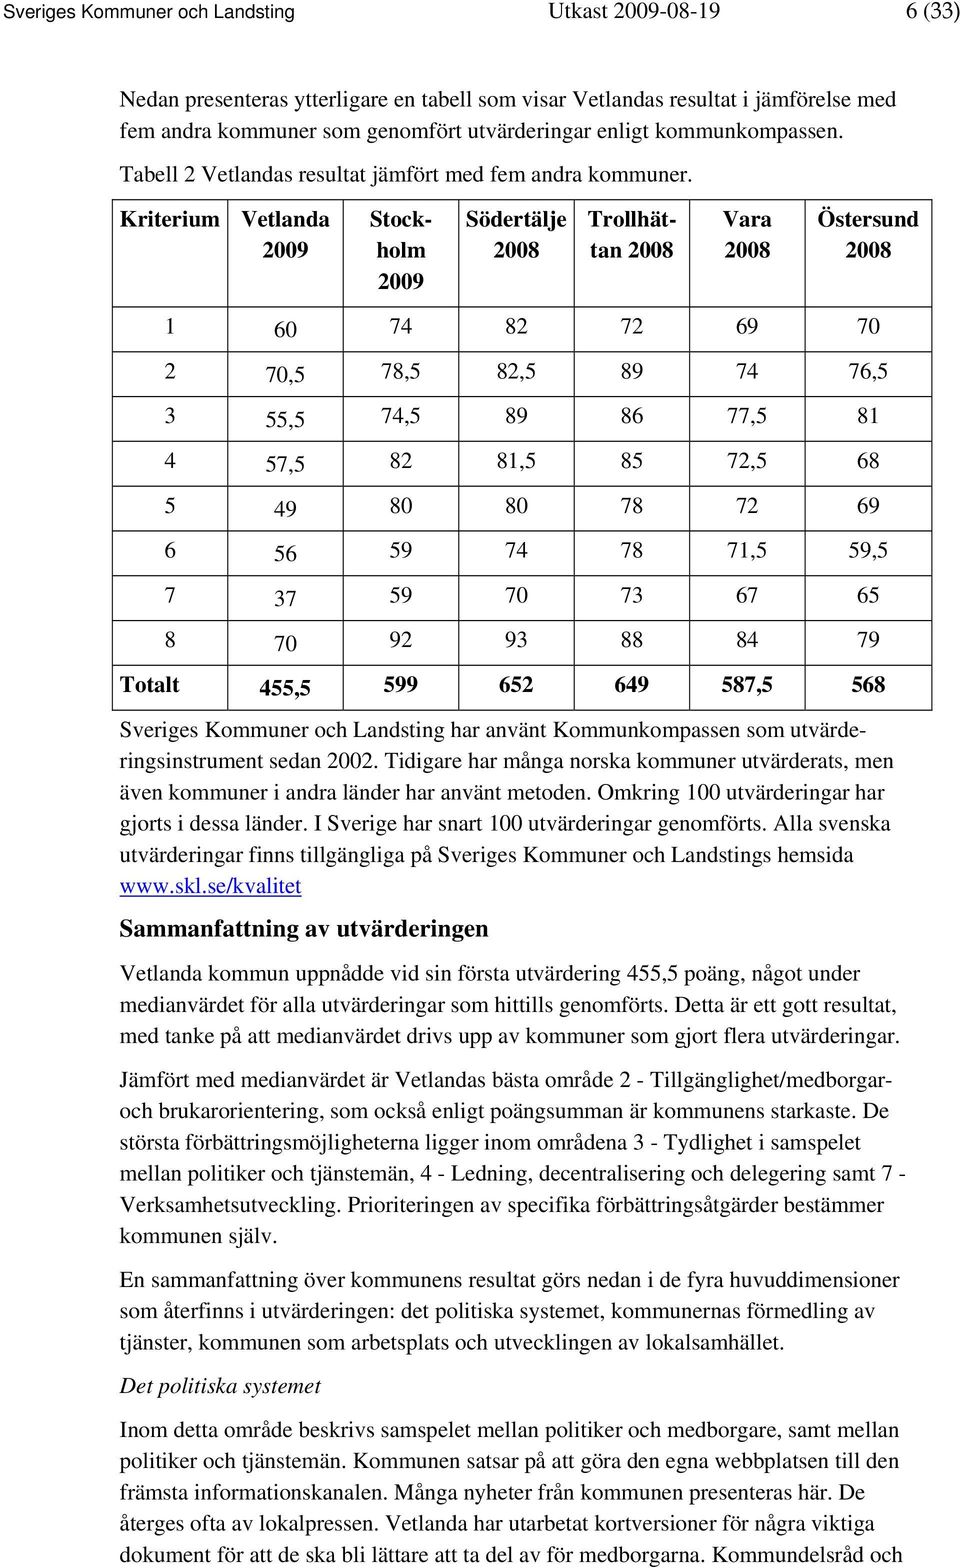 Kriterium Vetlanda 2009 Stockholm 2009 Södertälje 2008 Trollhättan 2008 Vara 2008 Östersund 2008 1 60 74 82 72 69 70 2 70,5 78,5 82,5 89 74 76,5 3 55,5 74,5 89 86 77,5 81 4 57,5 82 81,5 85 72,5 68 5